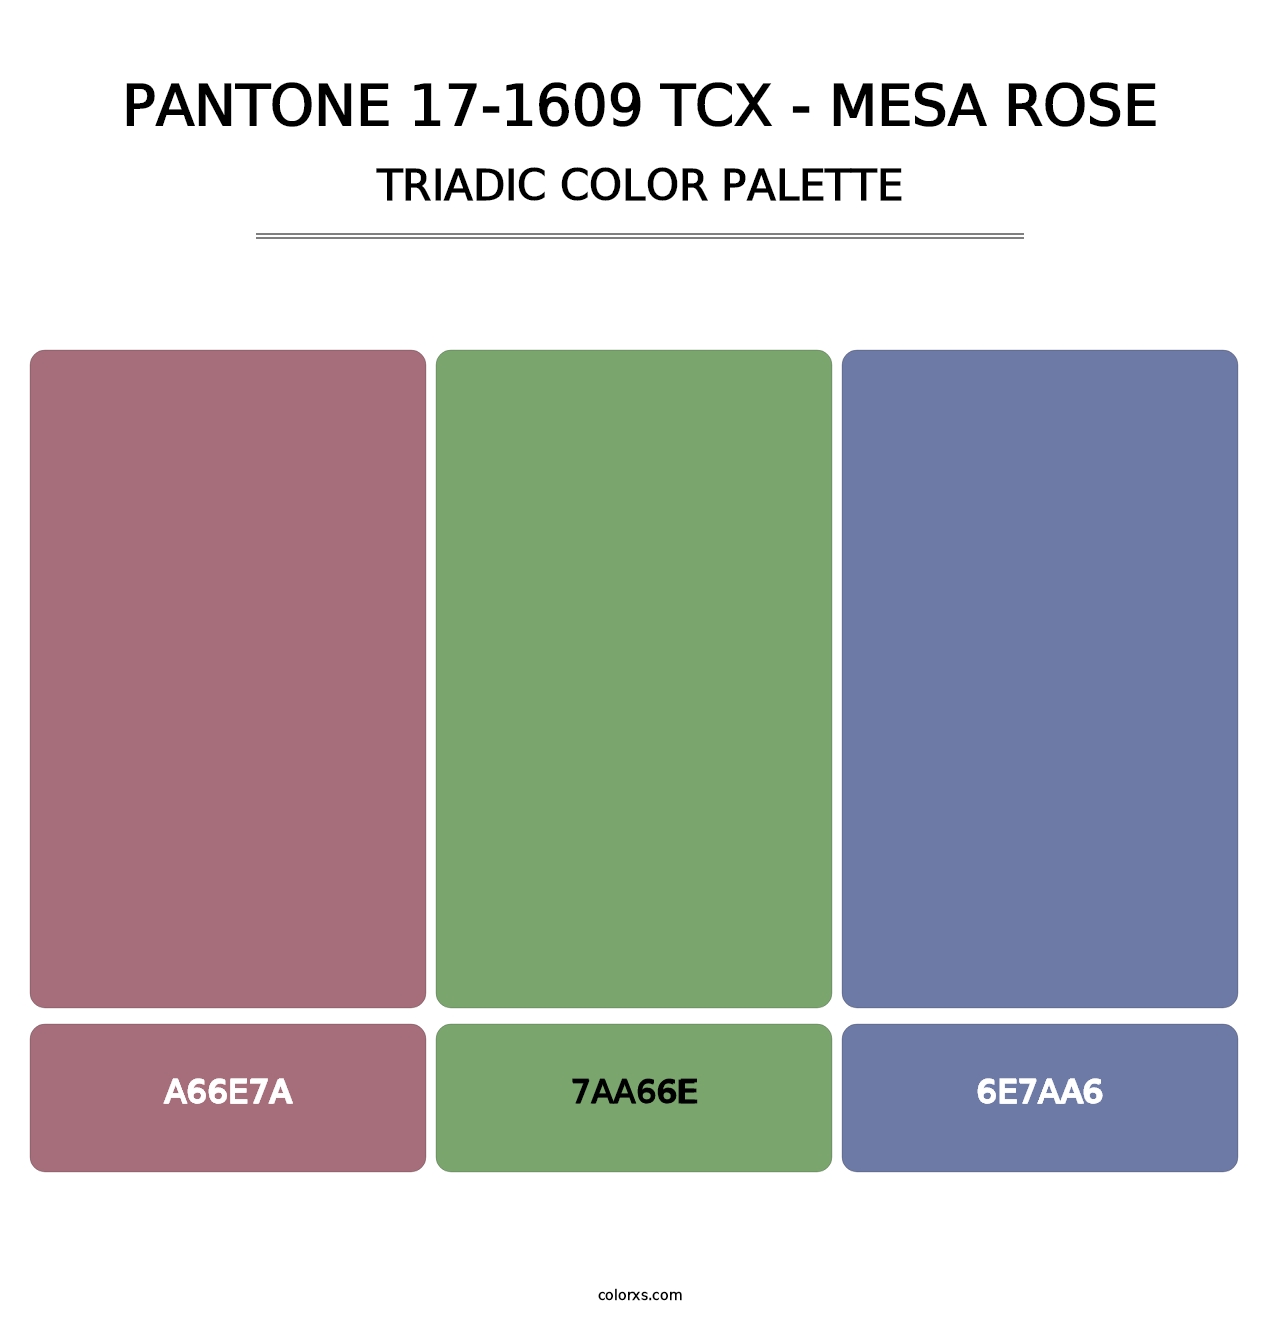 PANTONE 17-1609 TCX - Mesa Rose - Triadic Color Palette